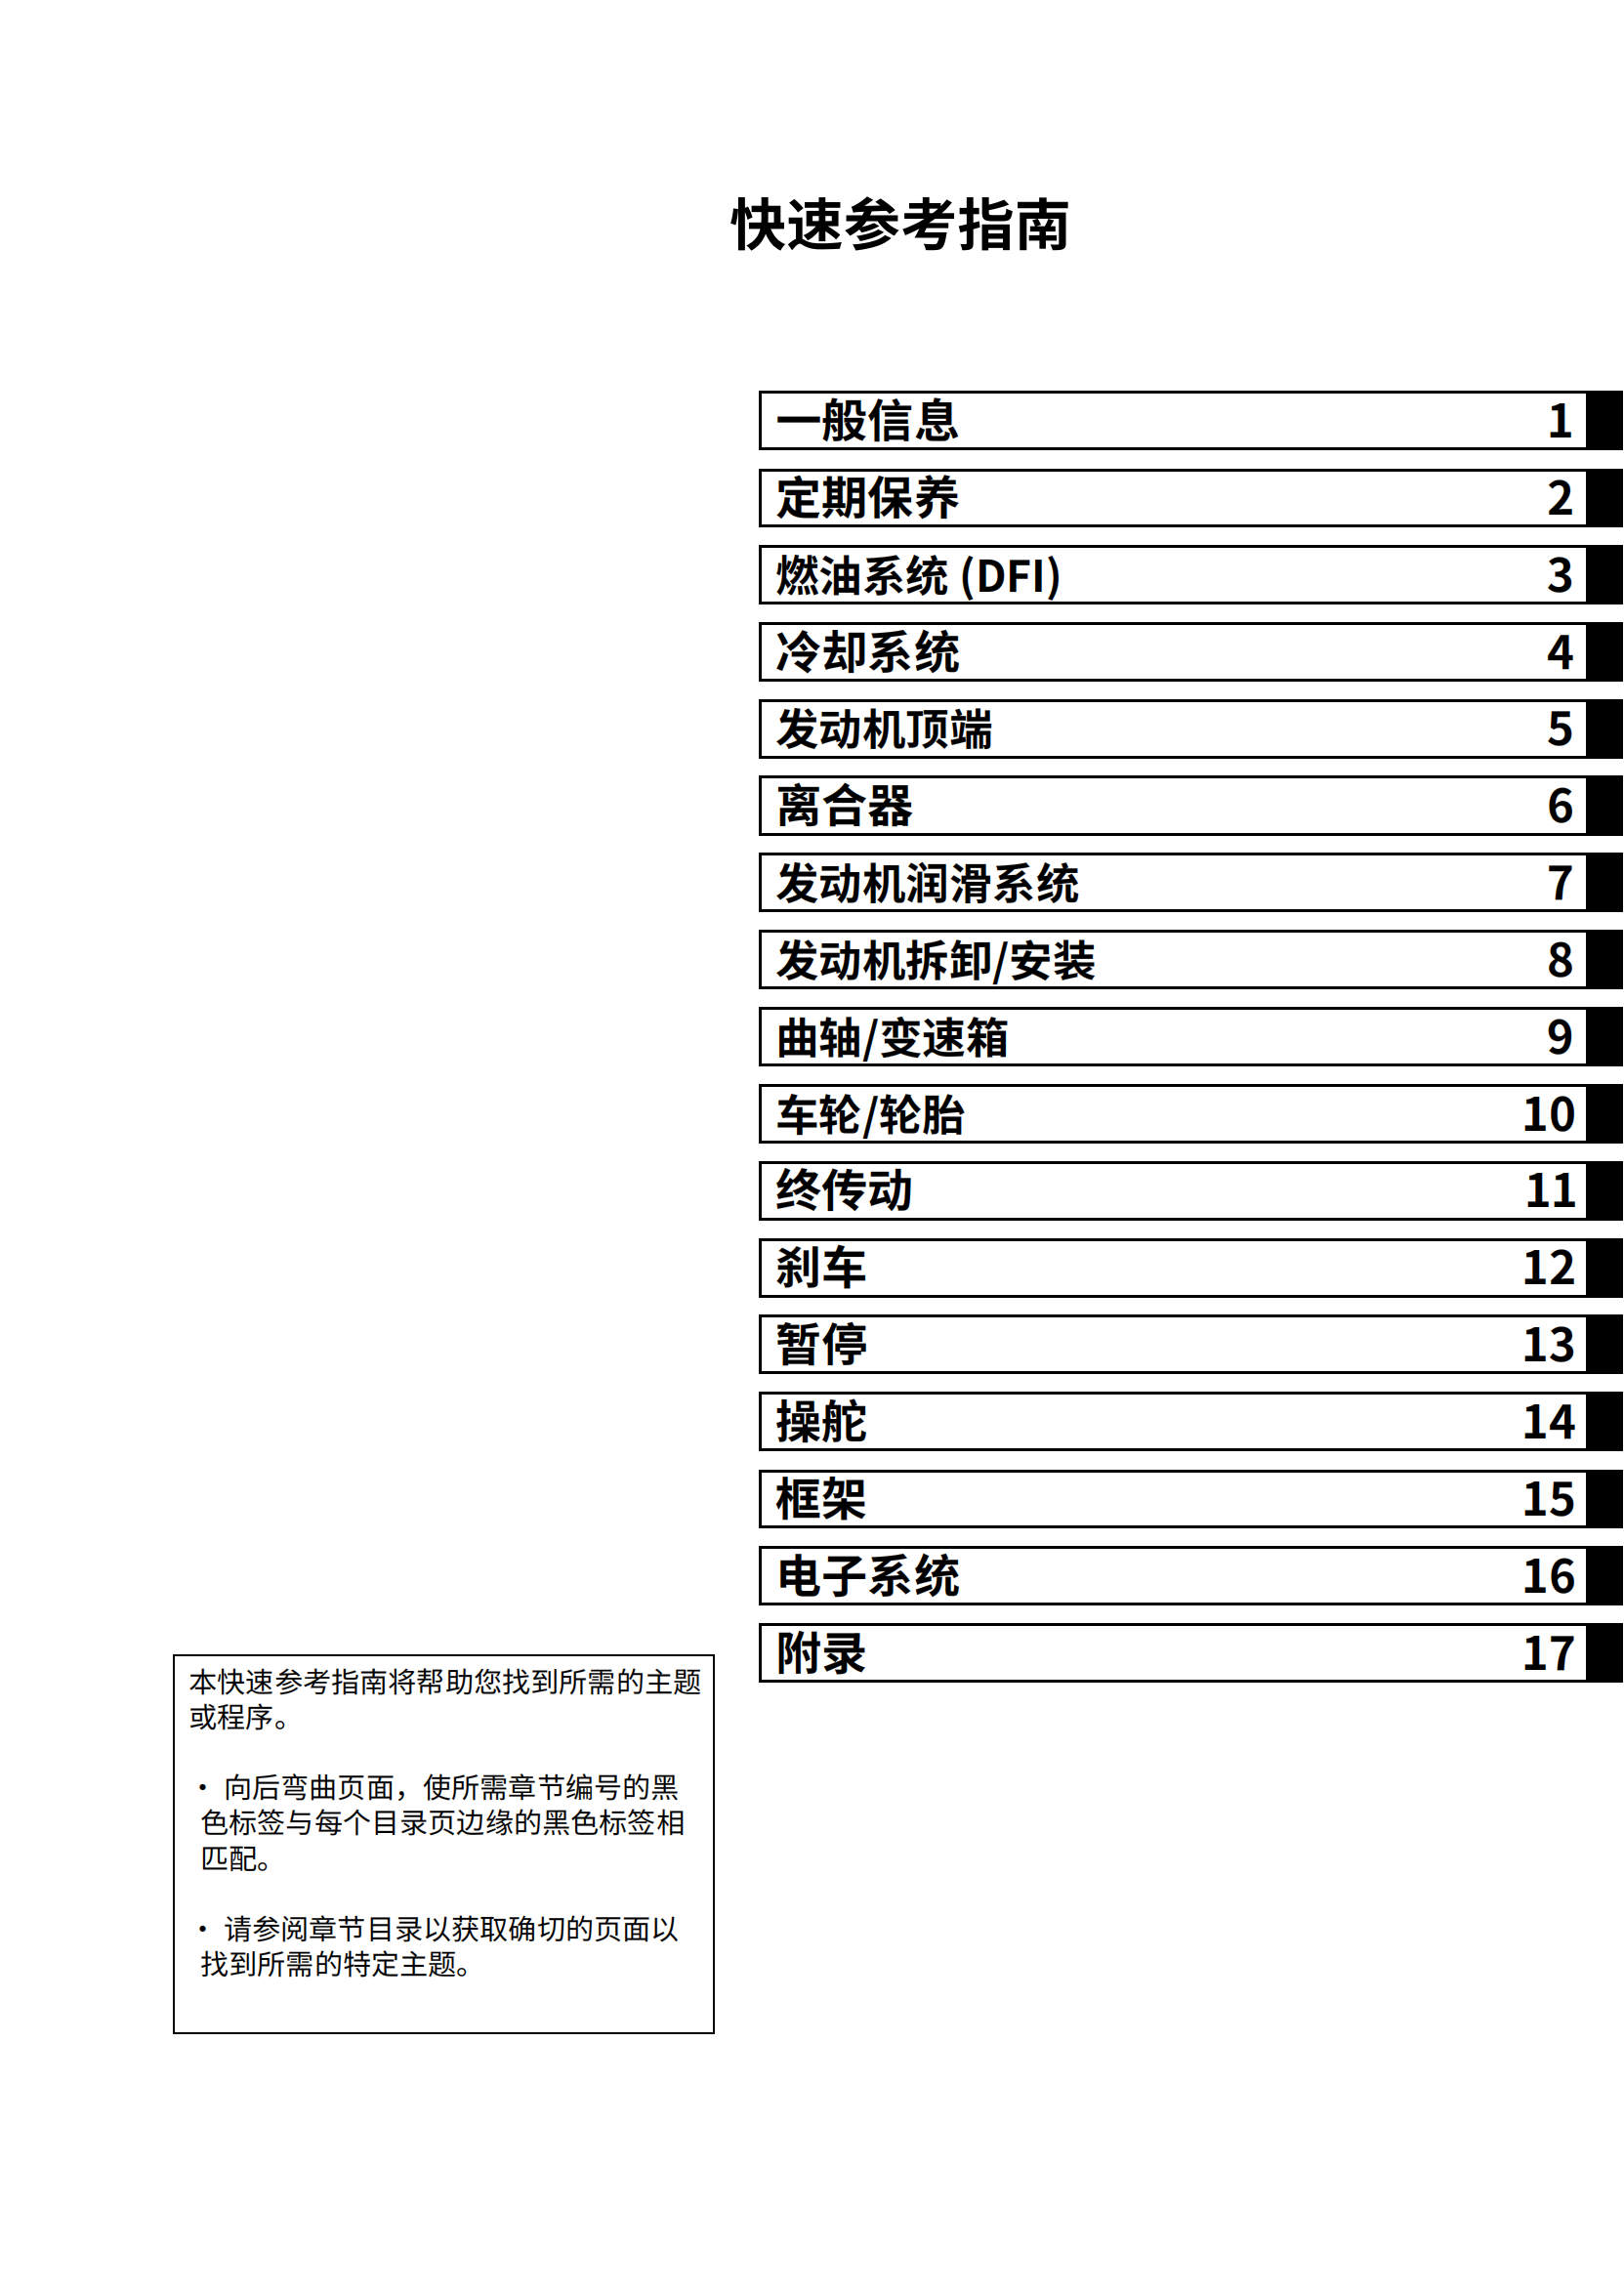 简体中文2009-2010年川崎ZX-10R维修手册大牛kawasaki ninjaZX-10R 维修手册插图1